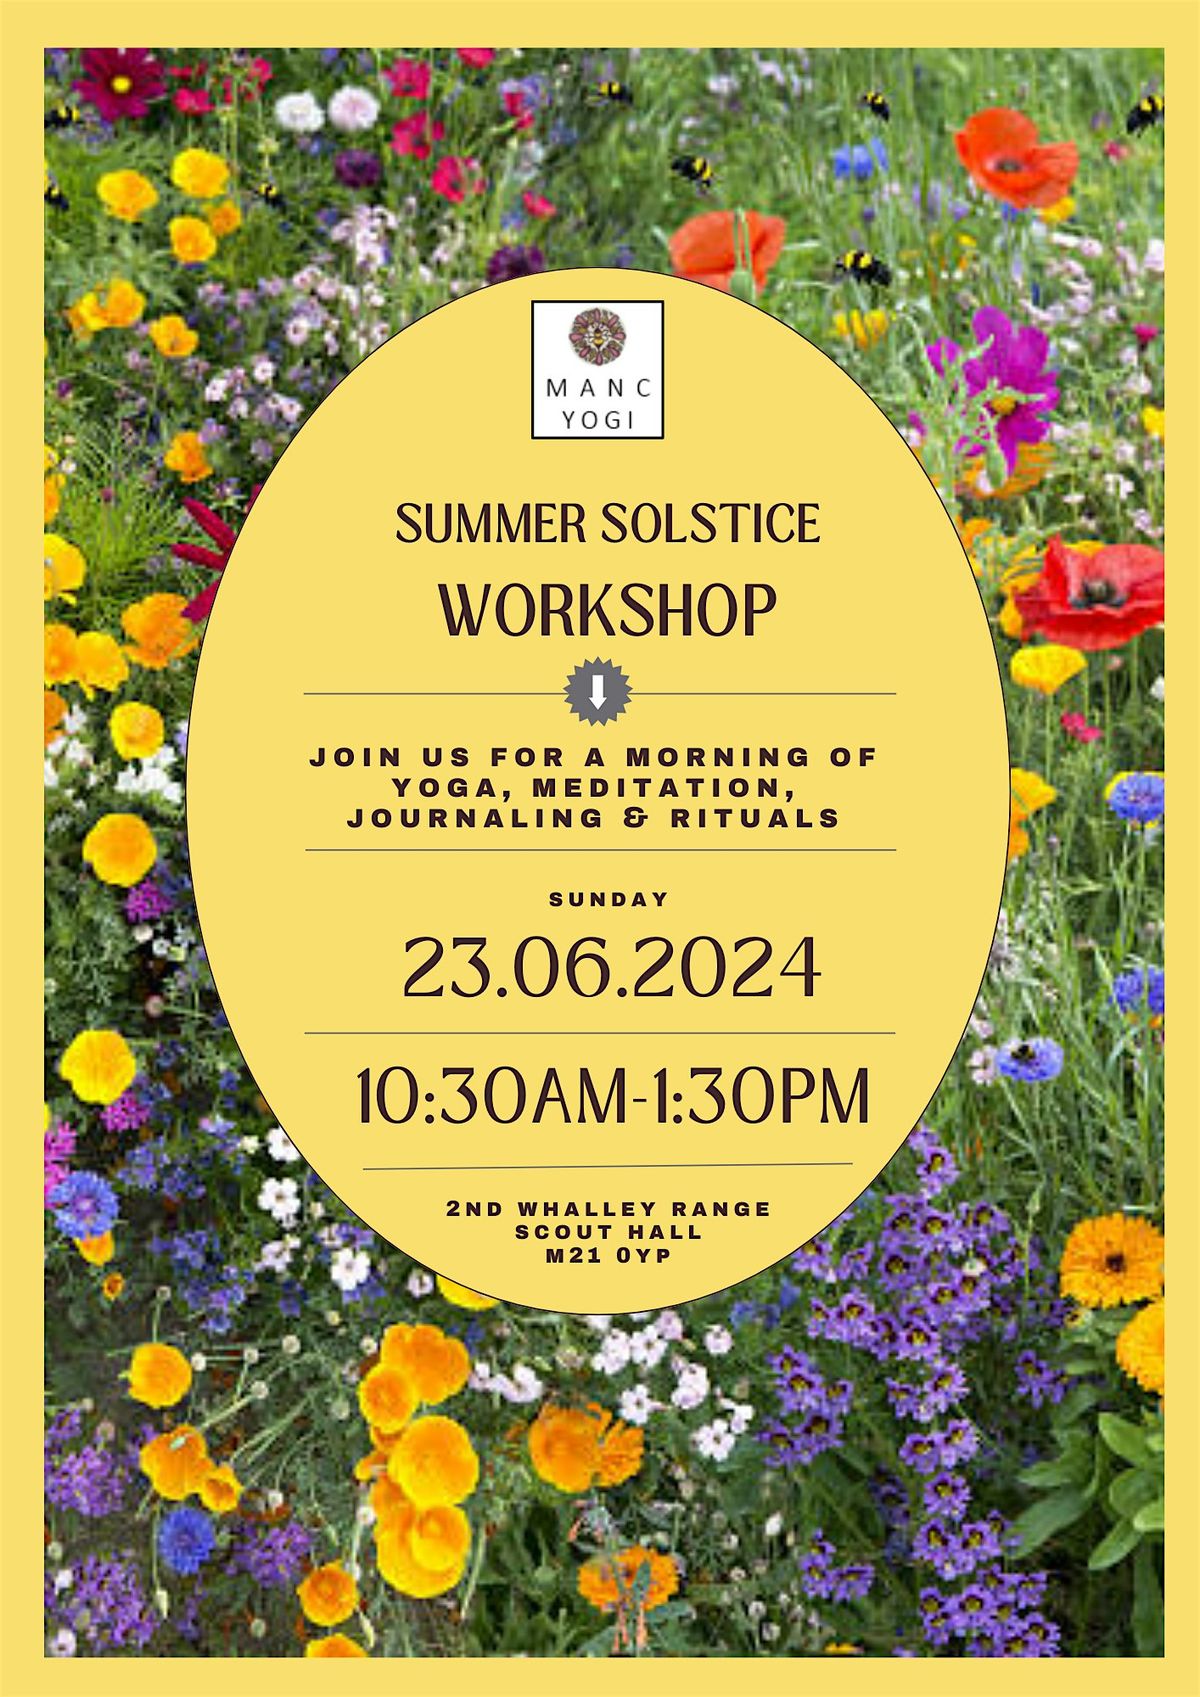 Summer Solstice Workshop